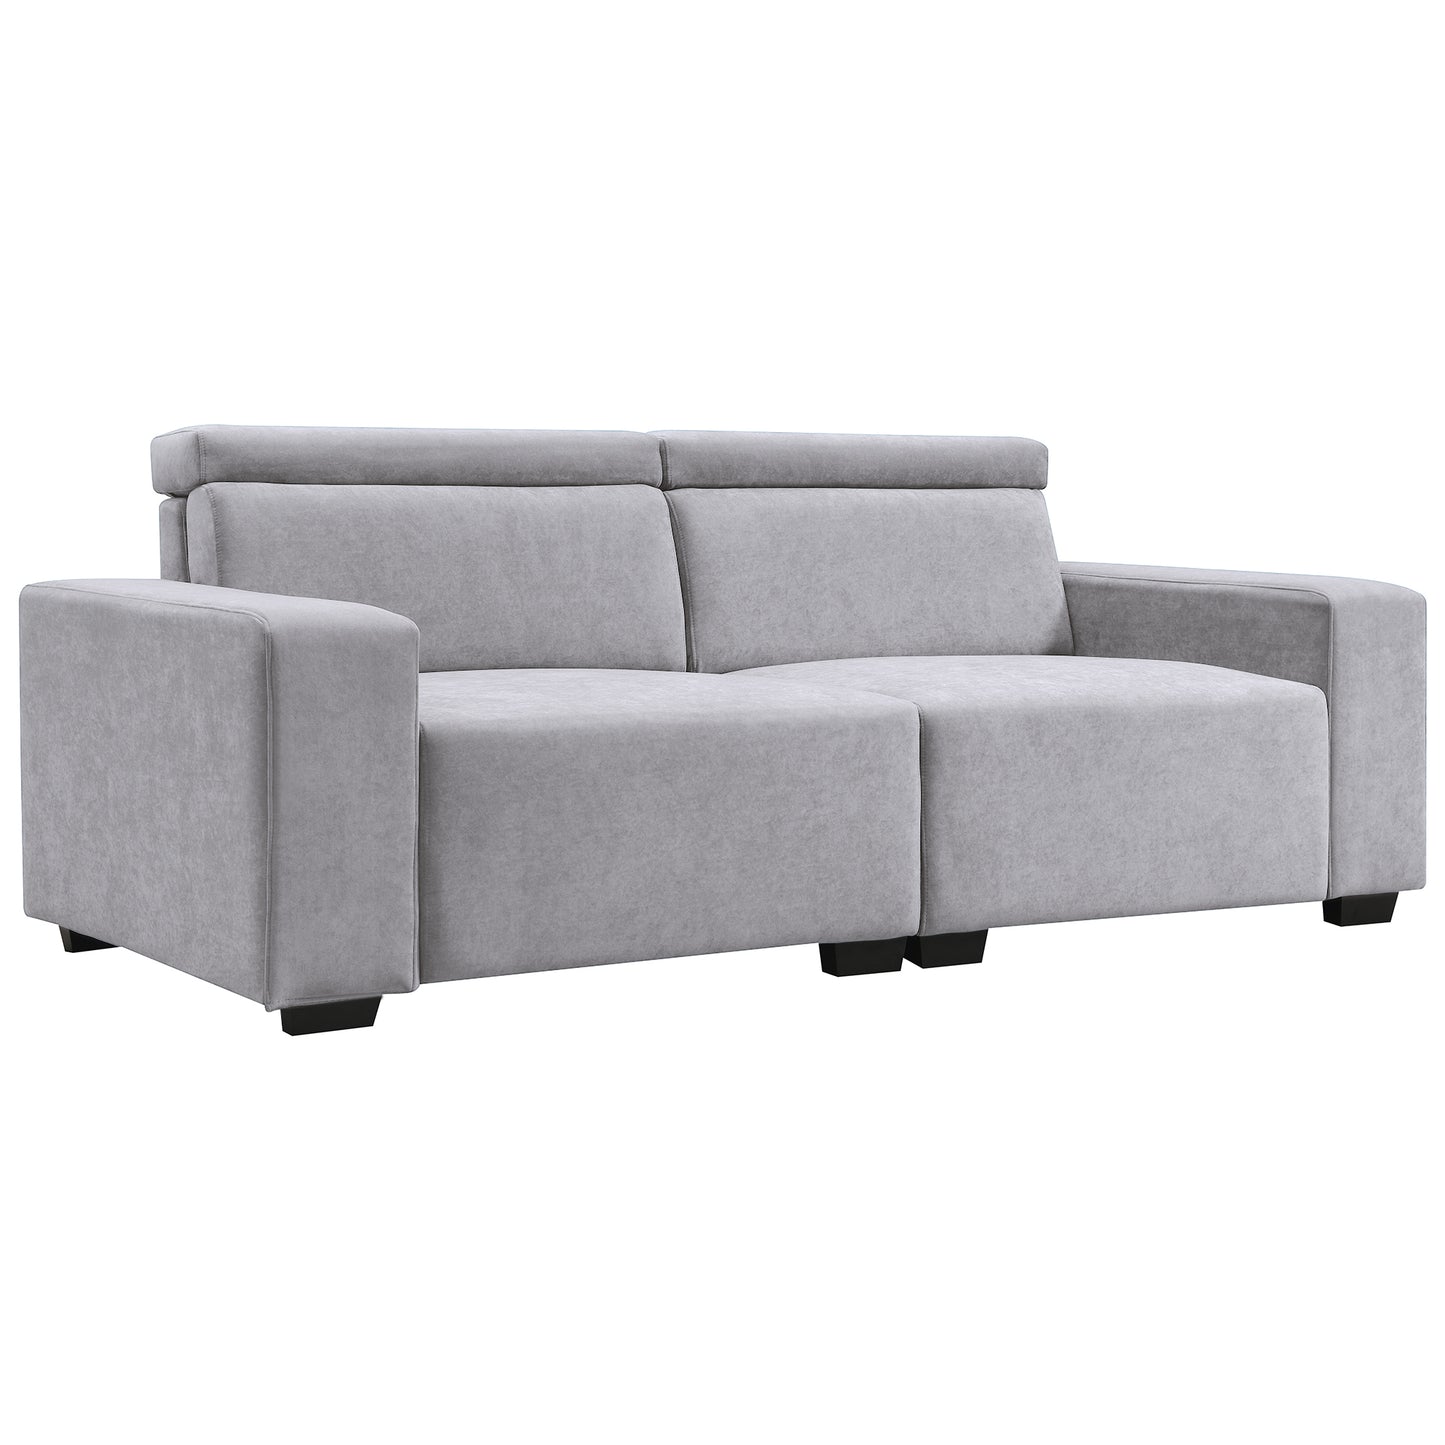 Multi-Angle Adjustable Headrest Light Gray Sofa